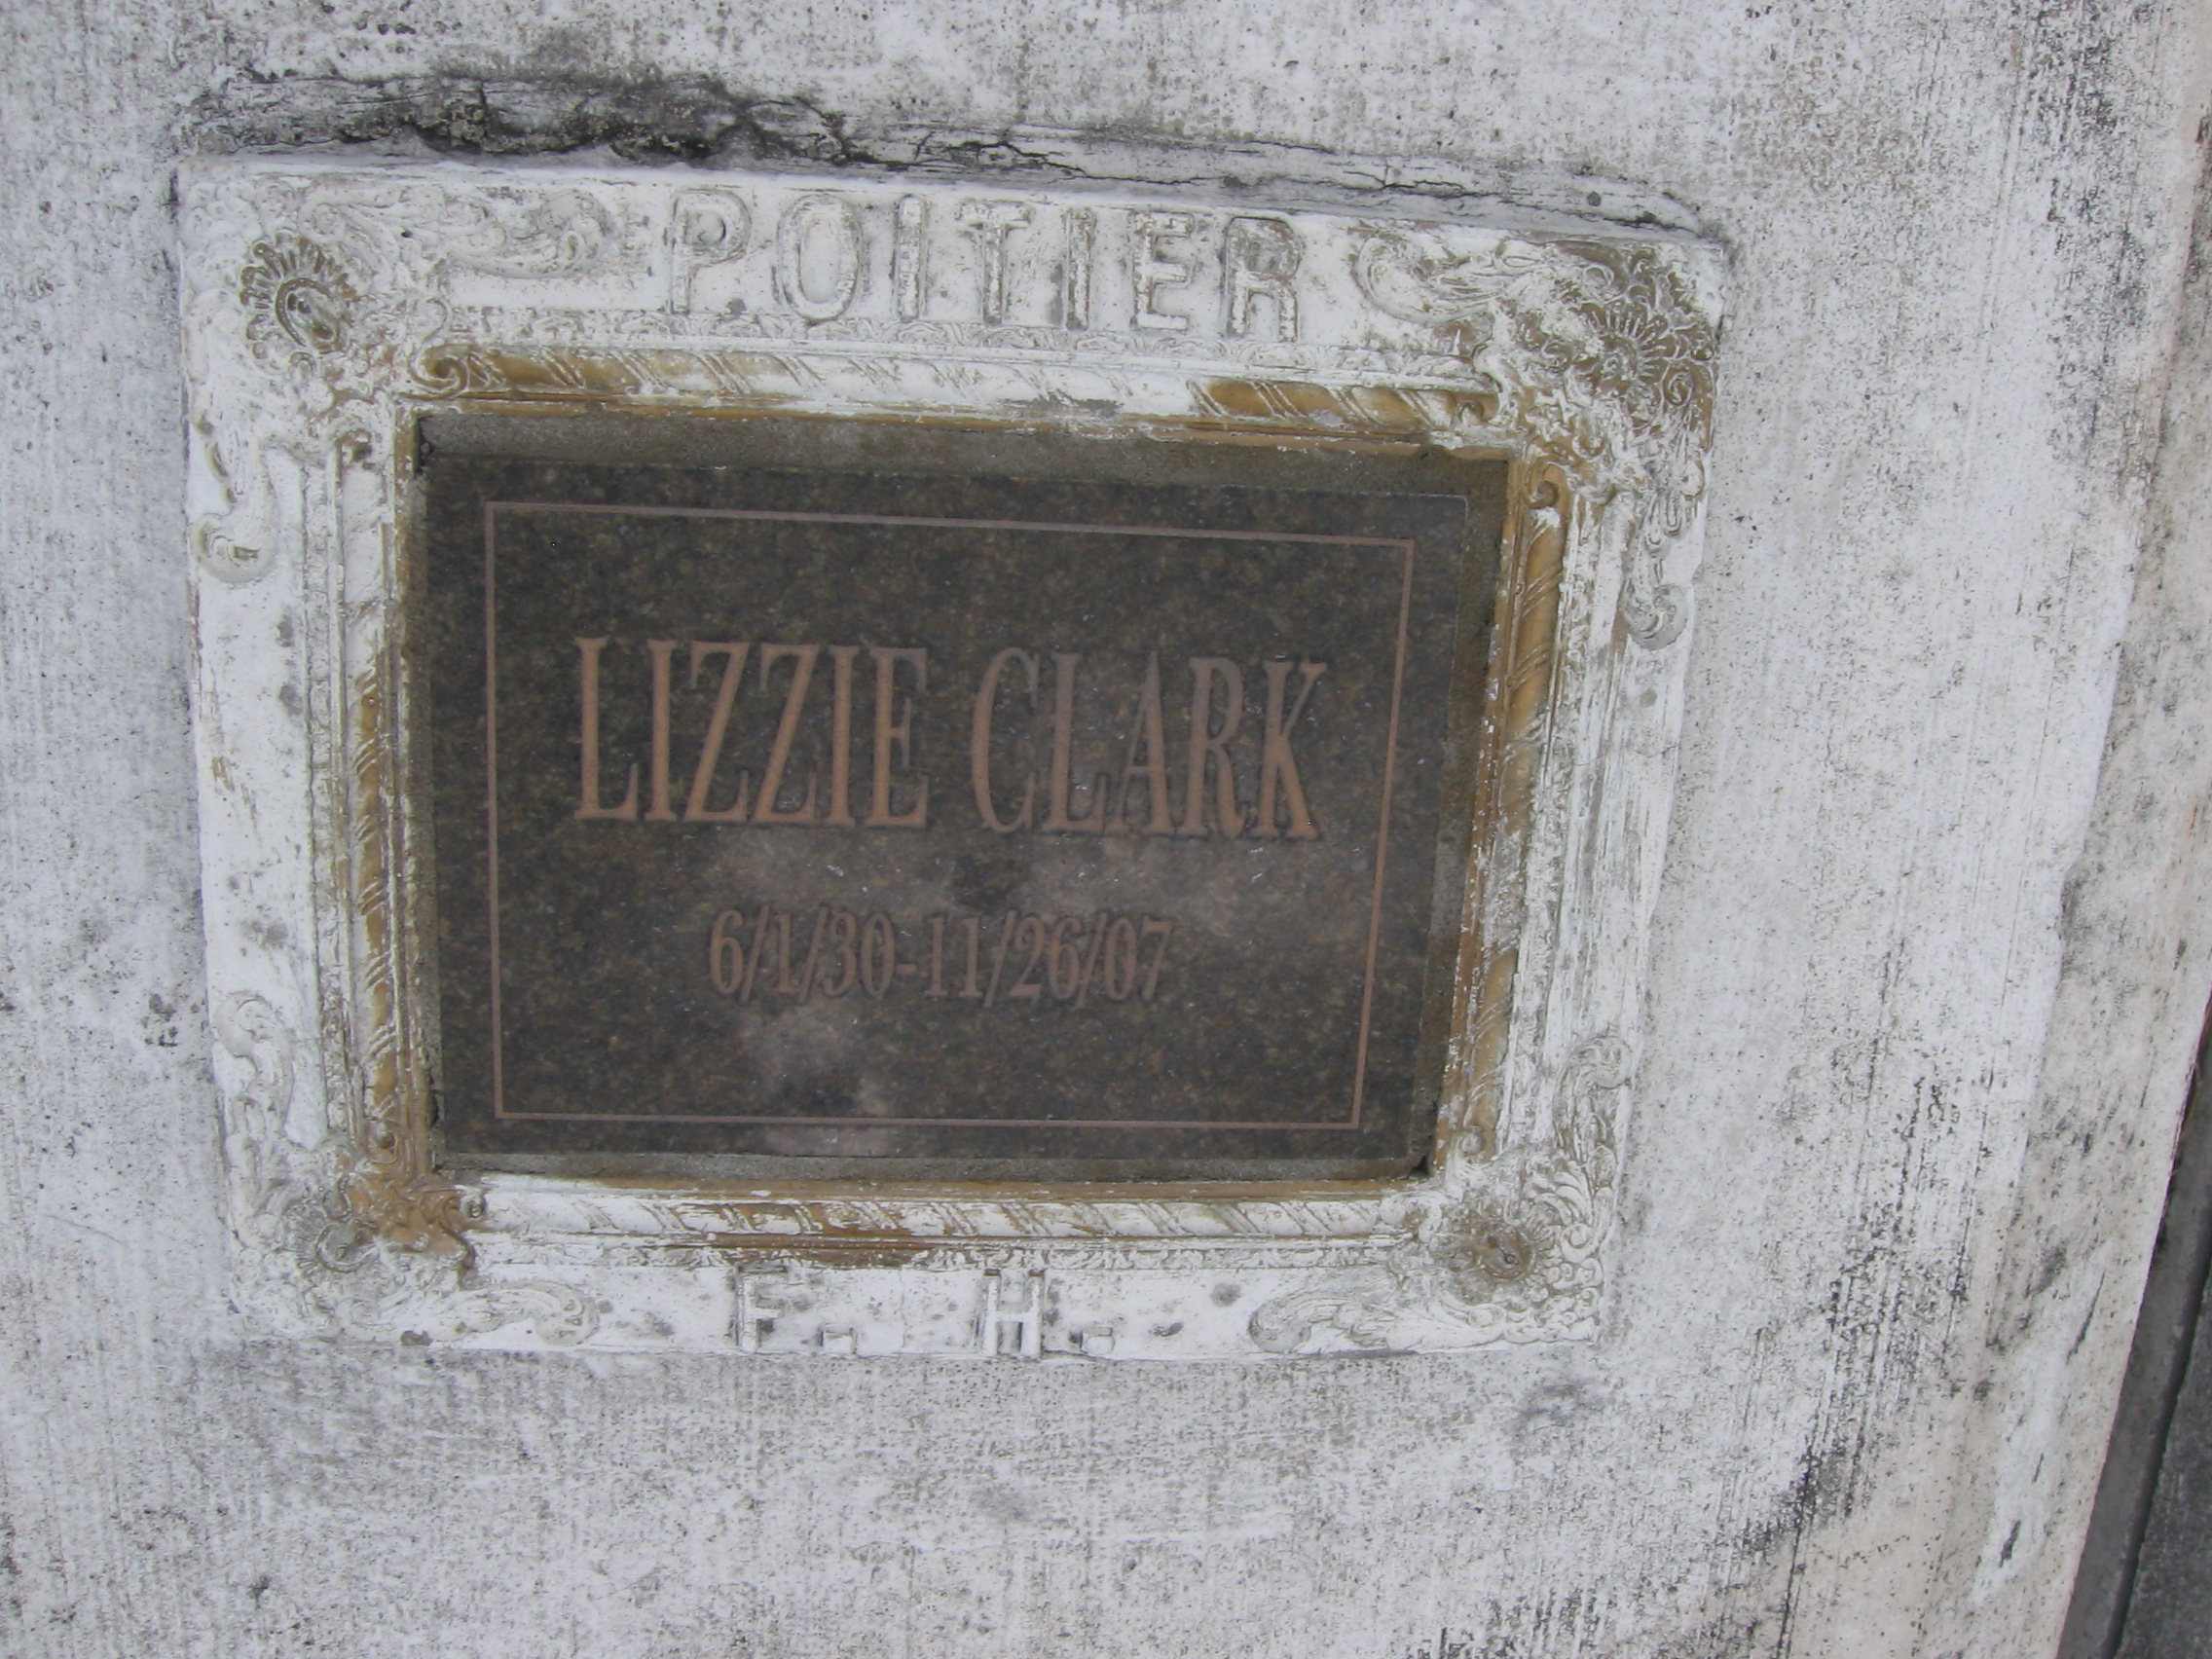 Lizzie Clark